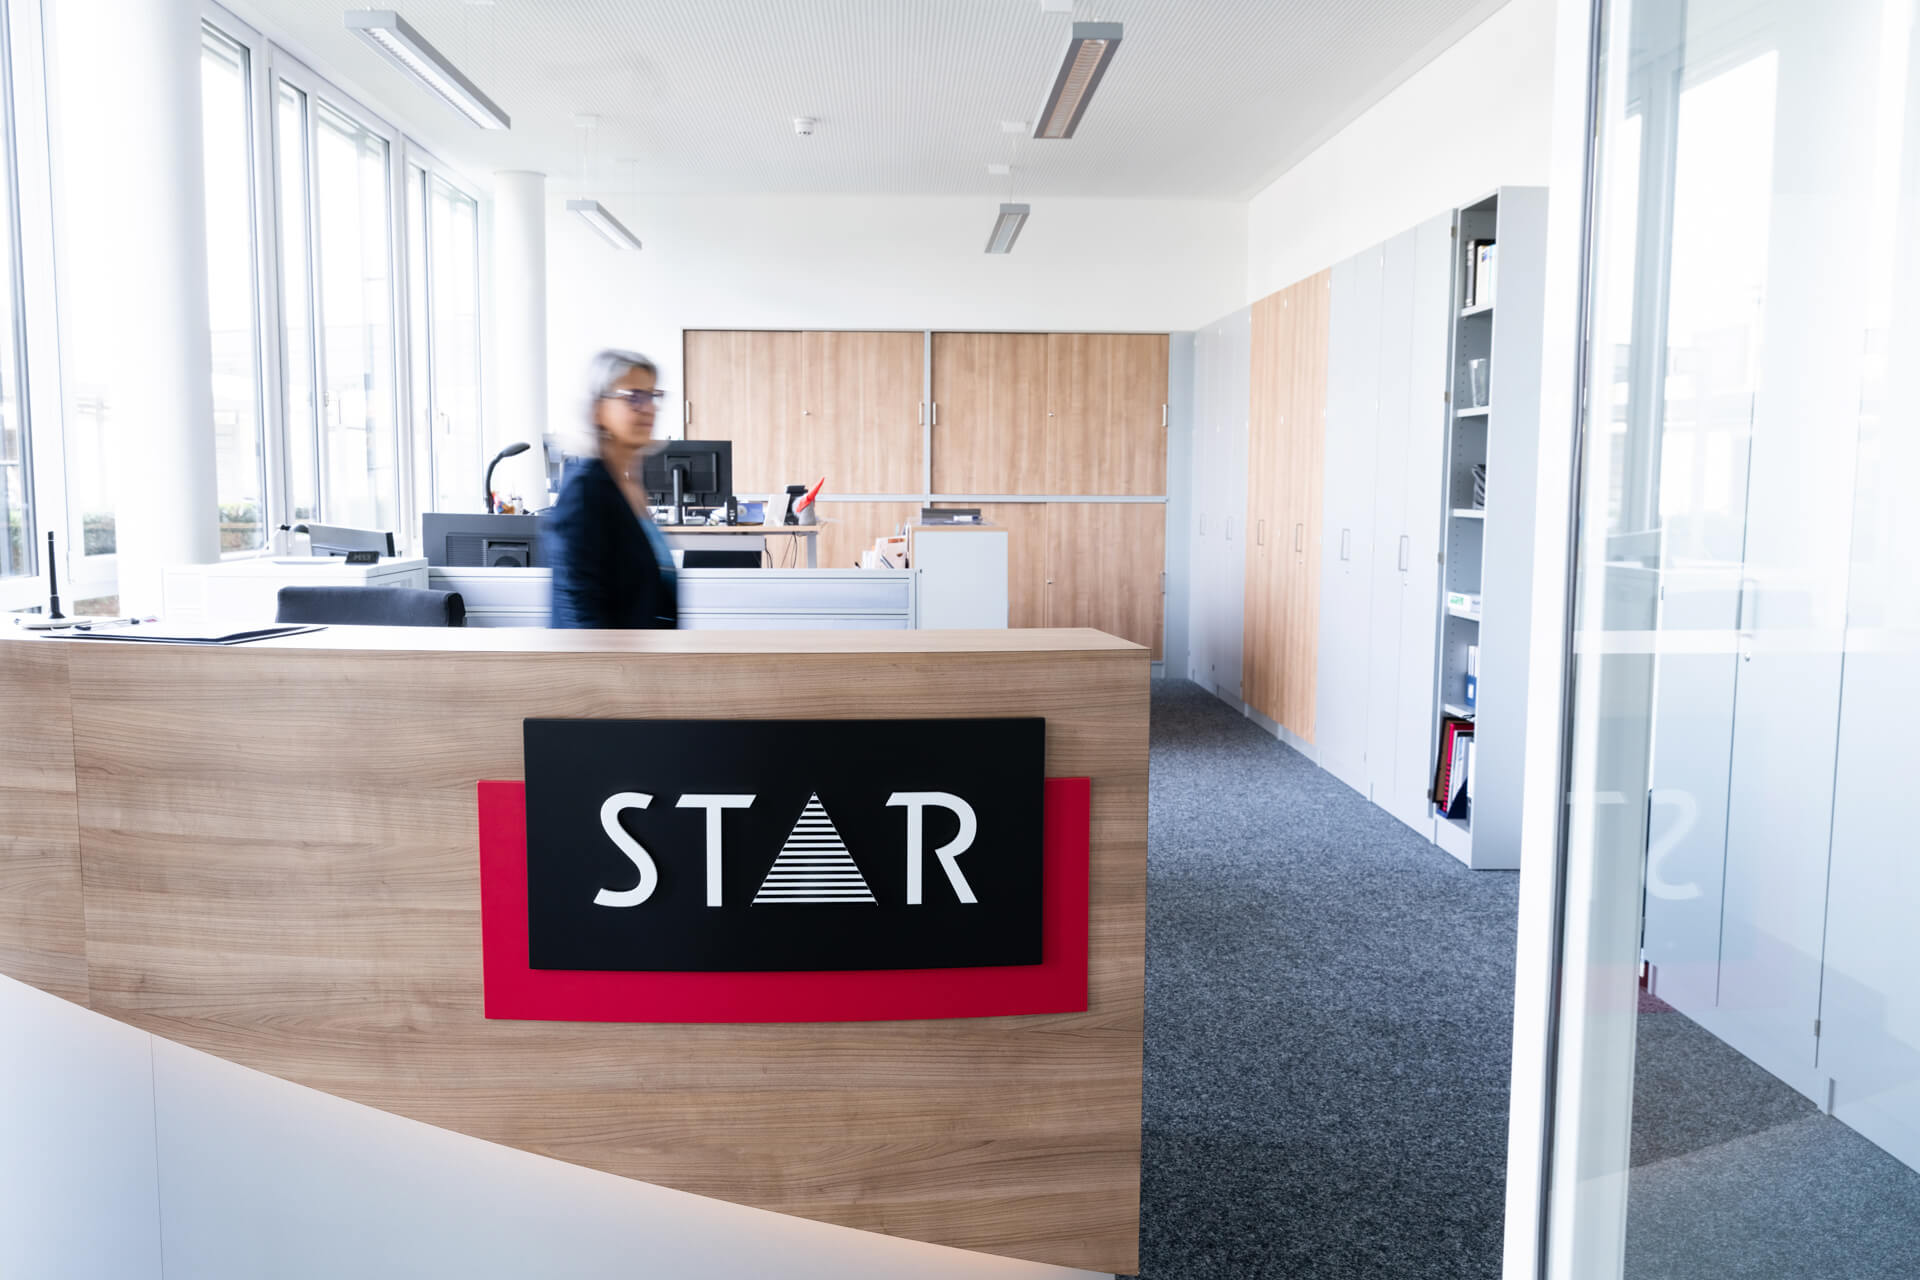 STAR Empfang mit großem STAR Logo und Mitarbeiterin in Bewegung.